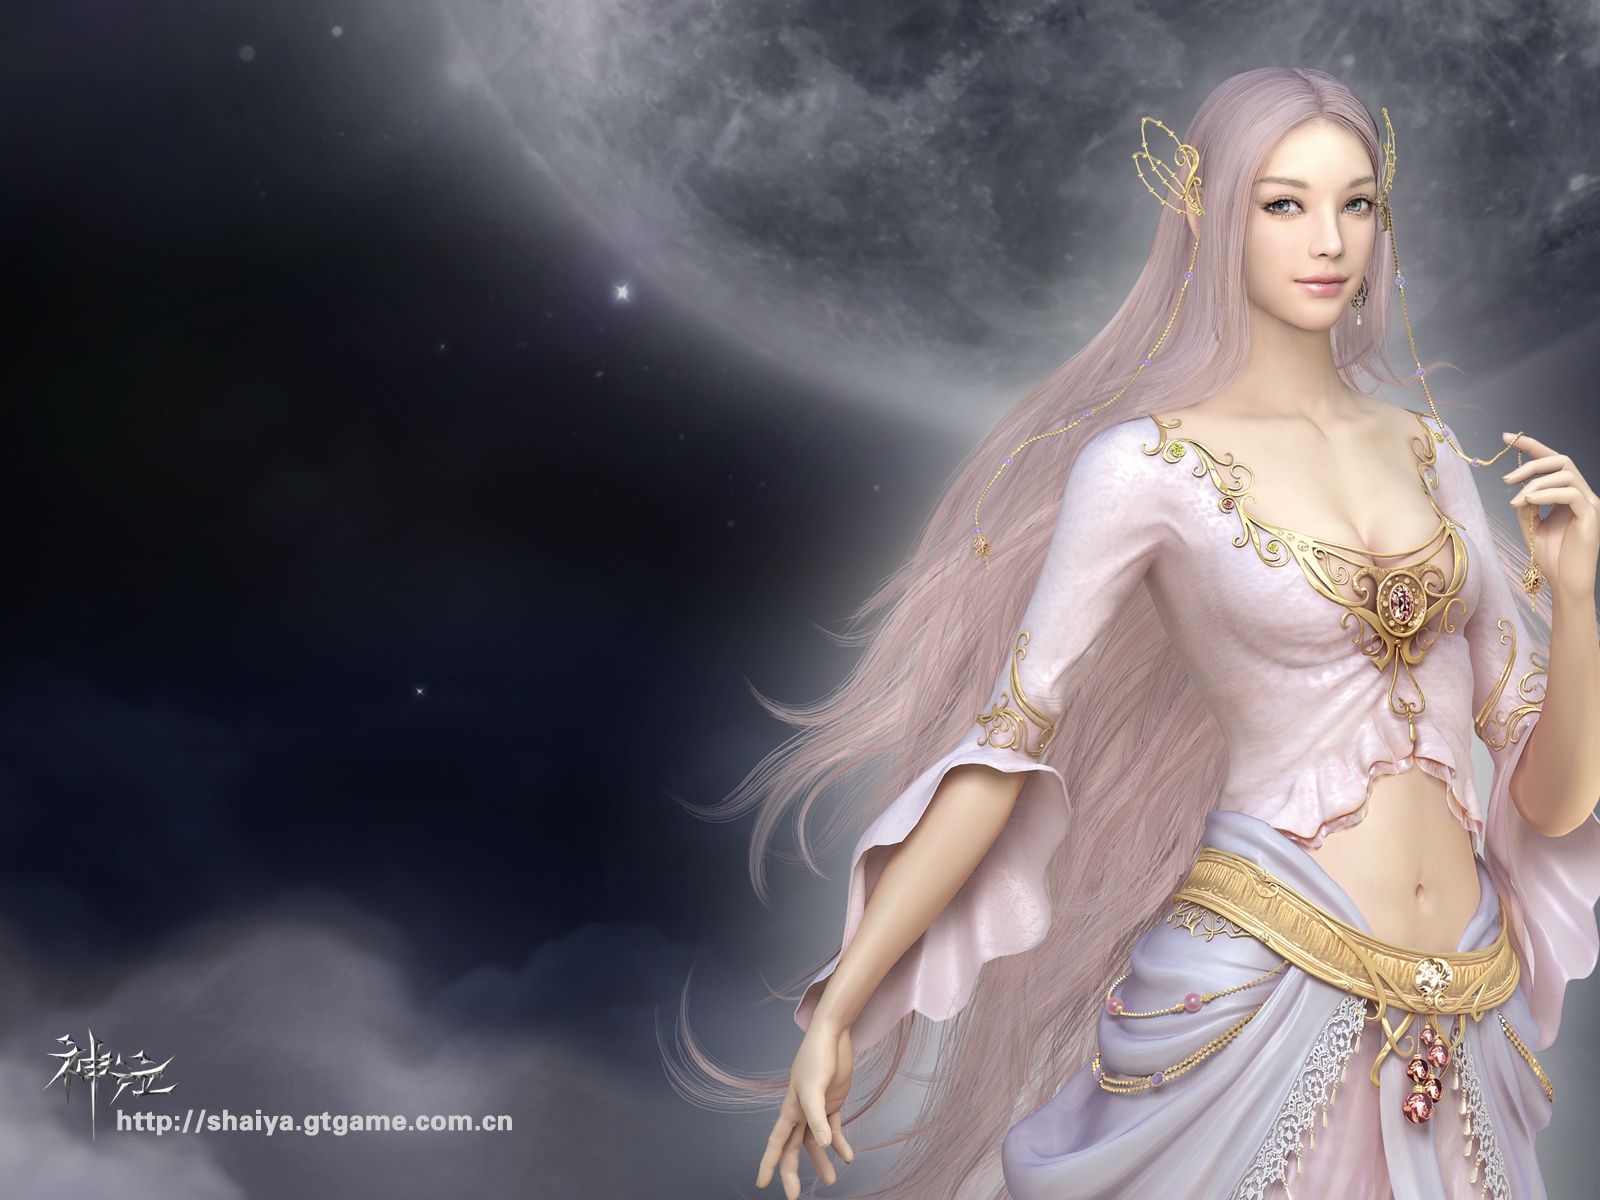 Shaiya Wallpaper Goddess 1 /5 - Fantasy Goddess Of Light , HD Wallpaper & Backgrounds